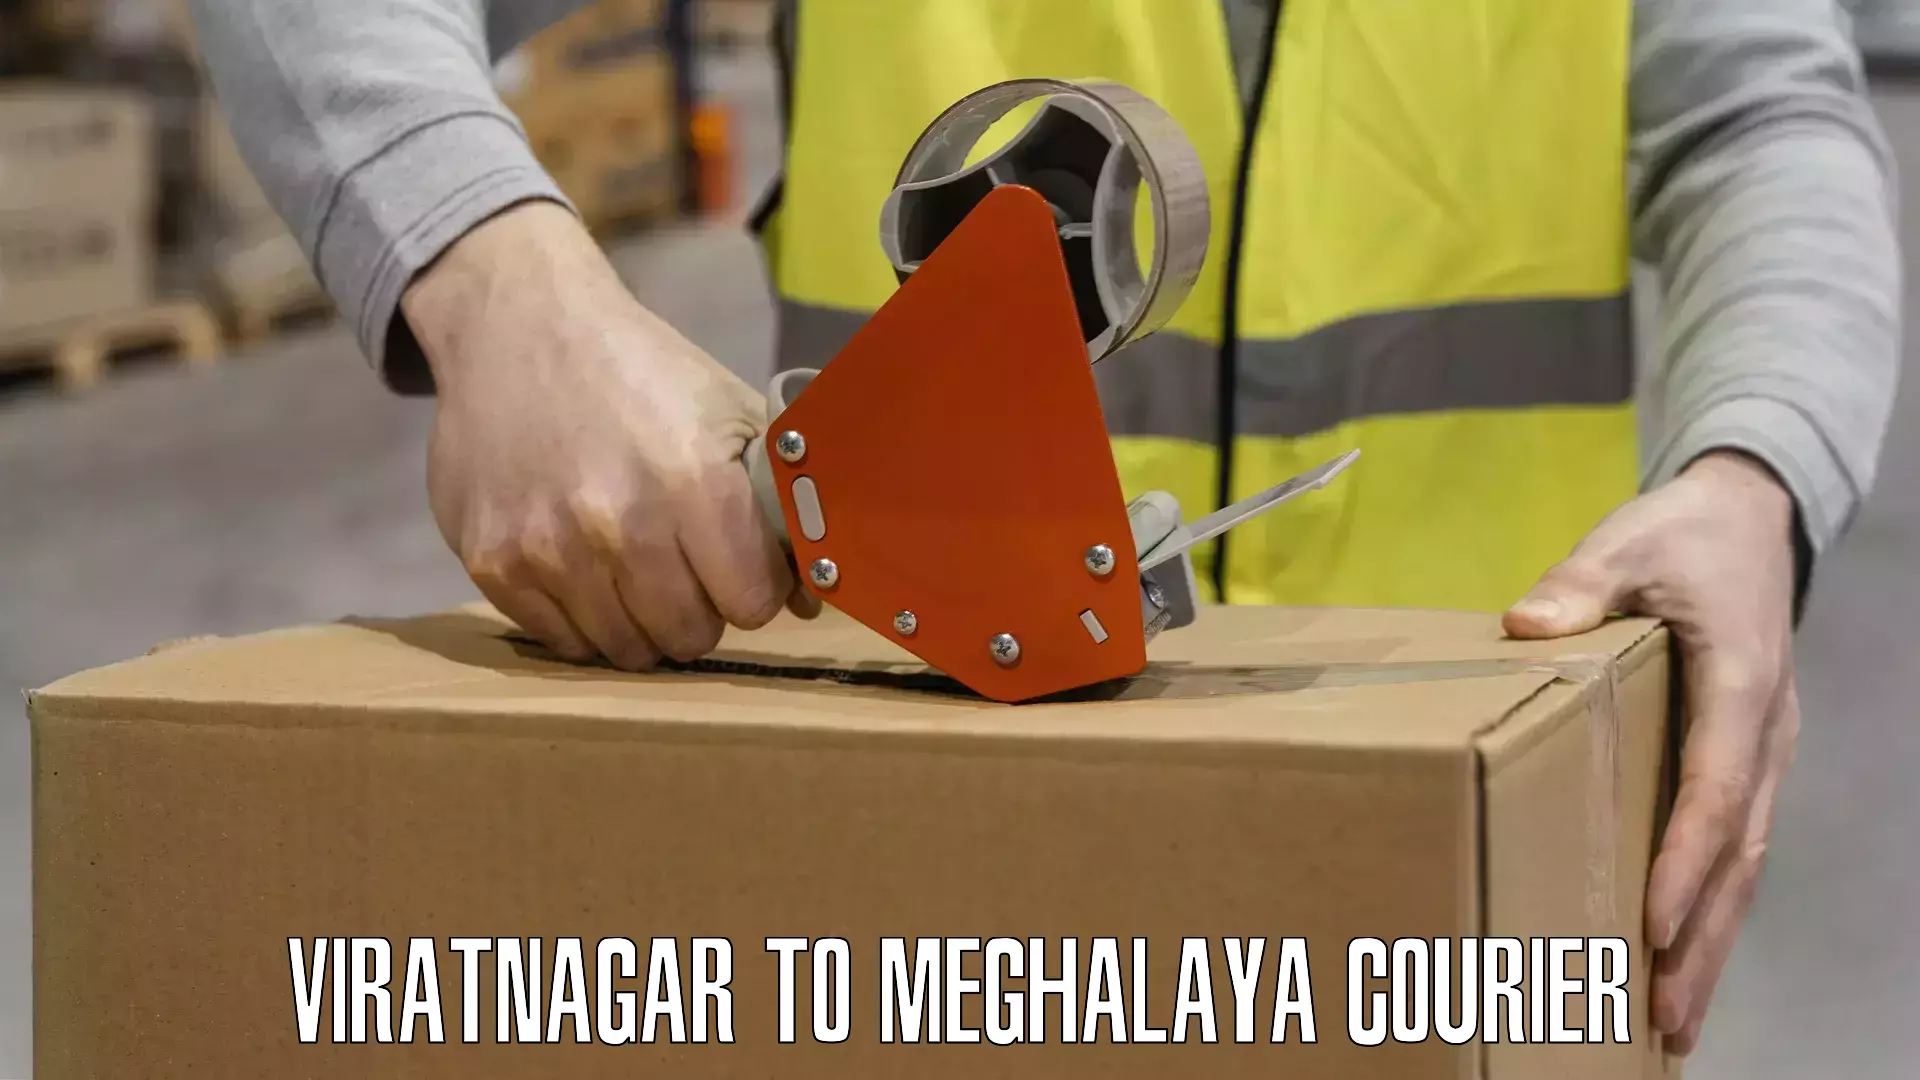 Express courier capabilities Viratnagar to Meghalaya